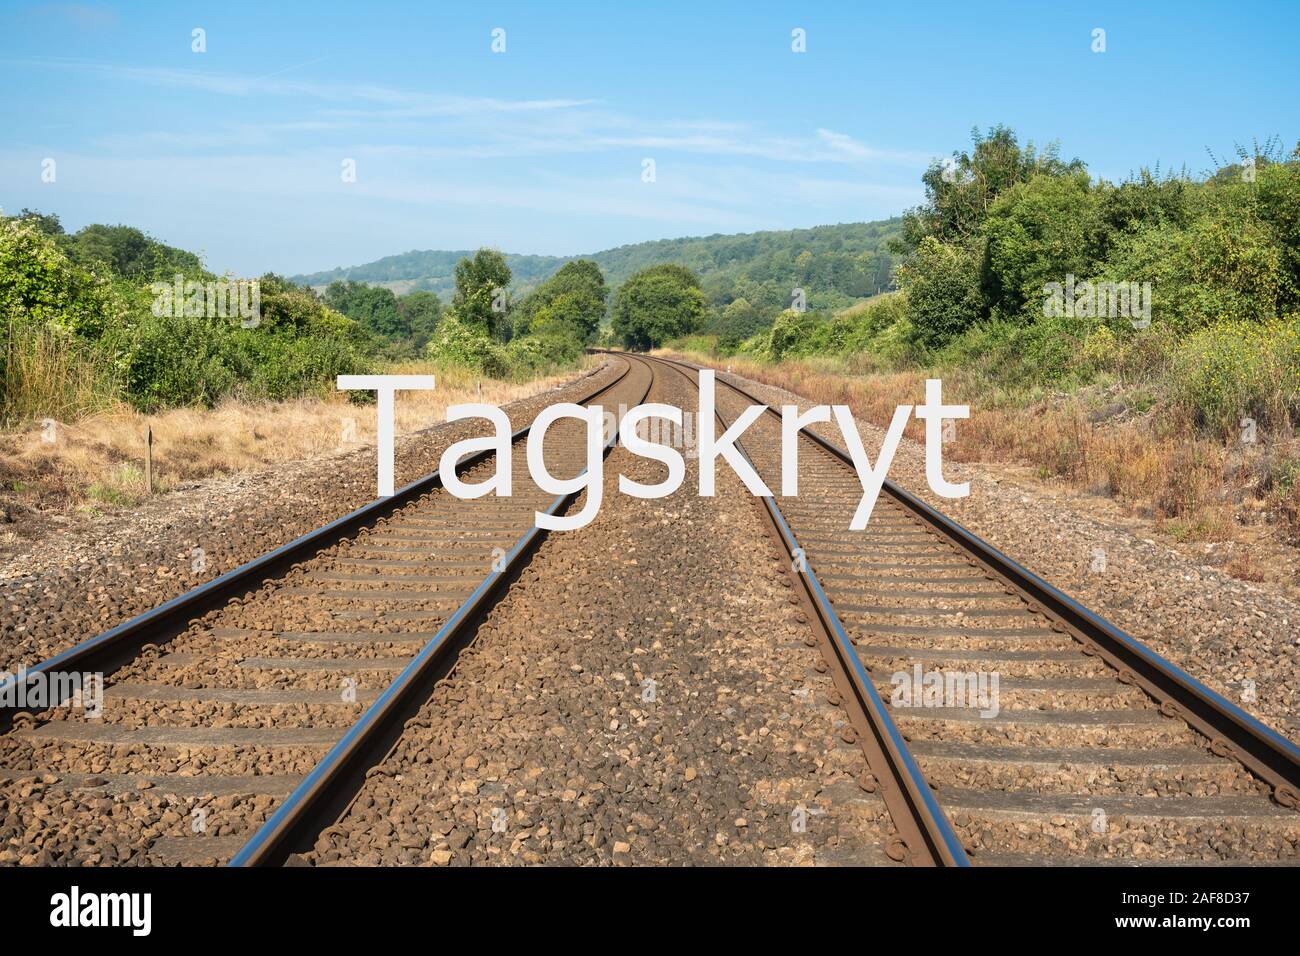 (Tren Tagskryt sueco para fanfarronear) concepto imagen - mediante trenes en lugar de volar para reducir la huella de carbono travel Foto de stock